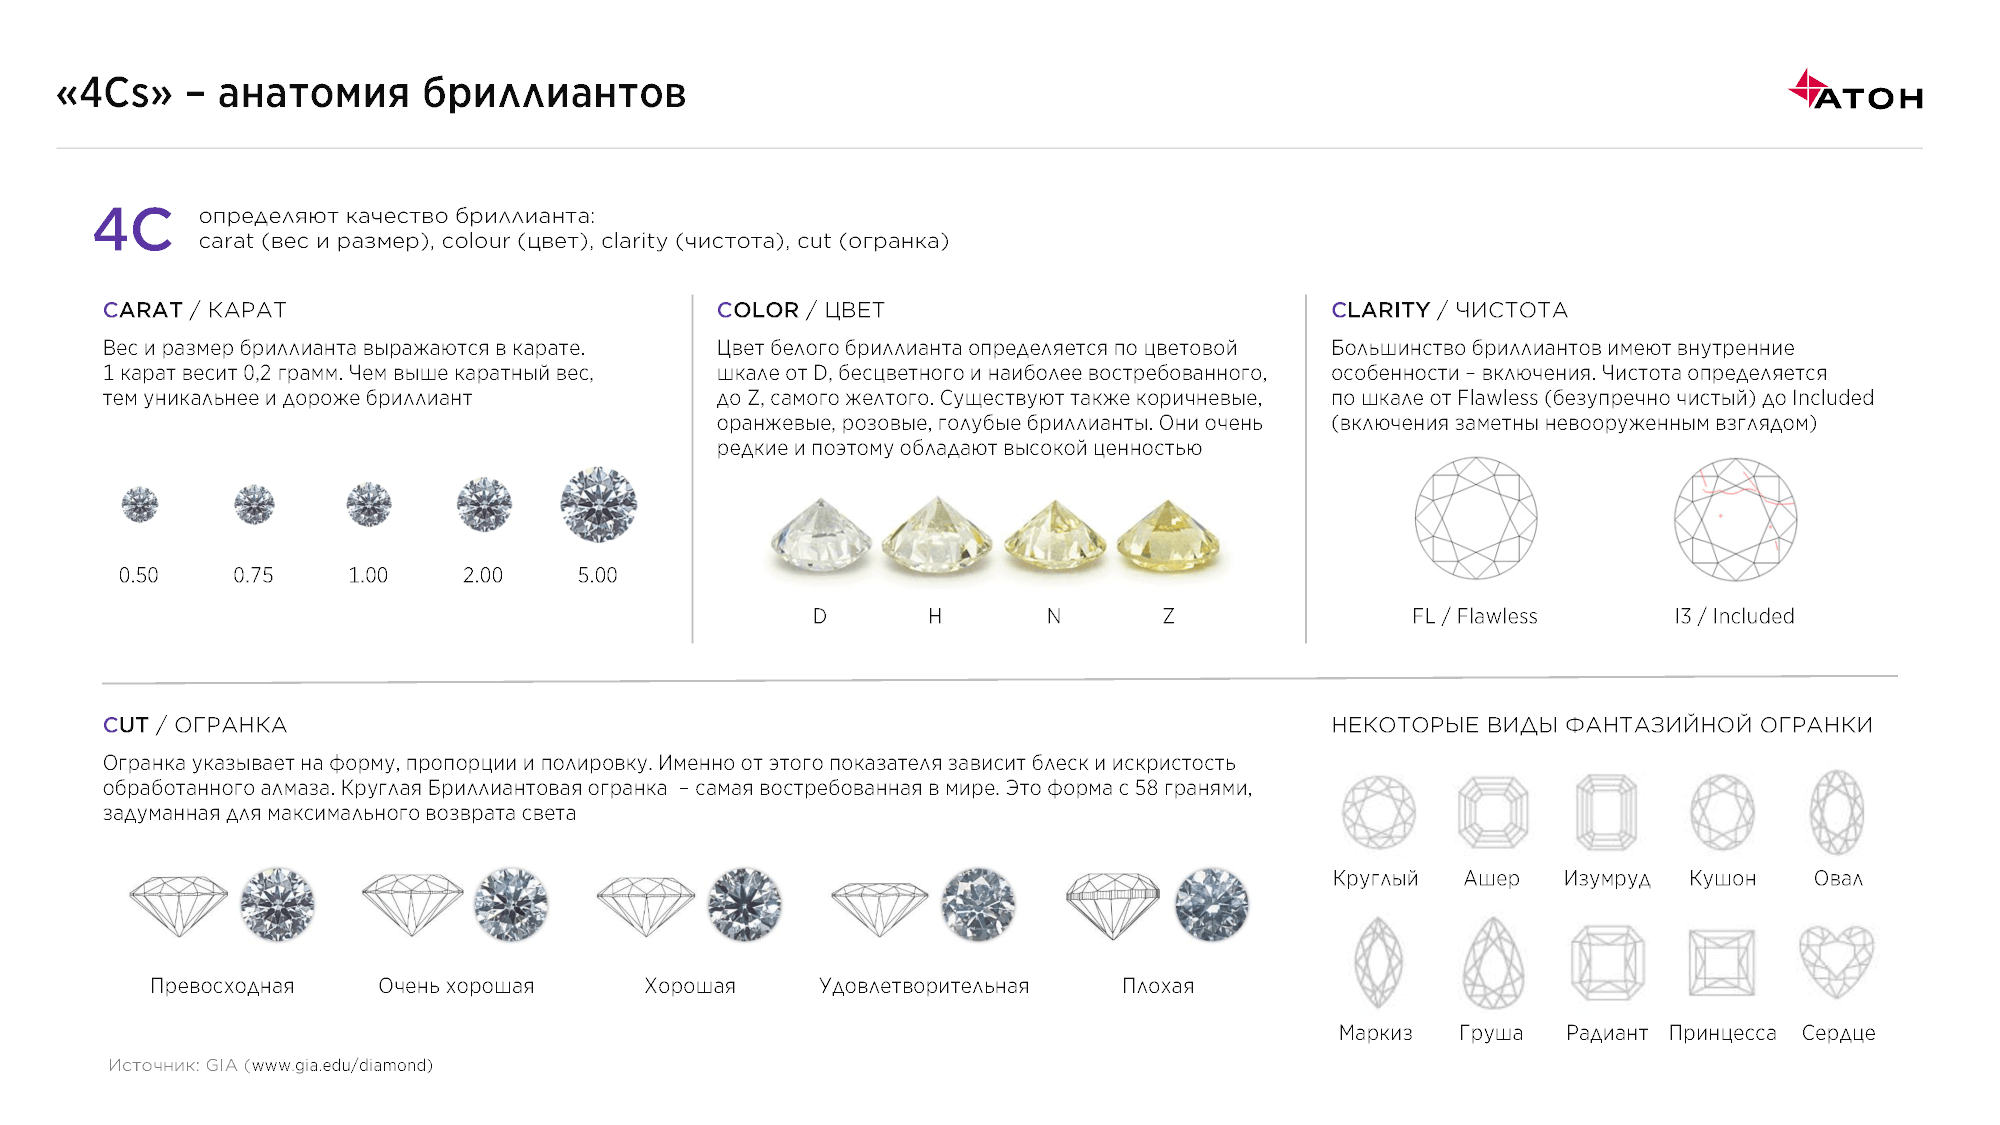 Как распознать основные минералы (с иллюстрациями)